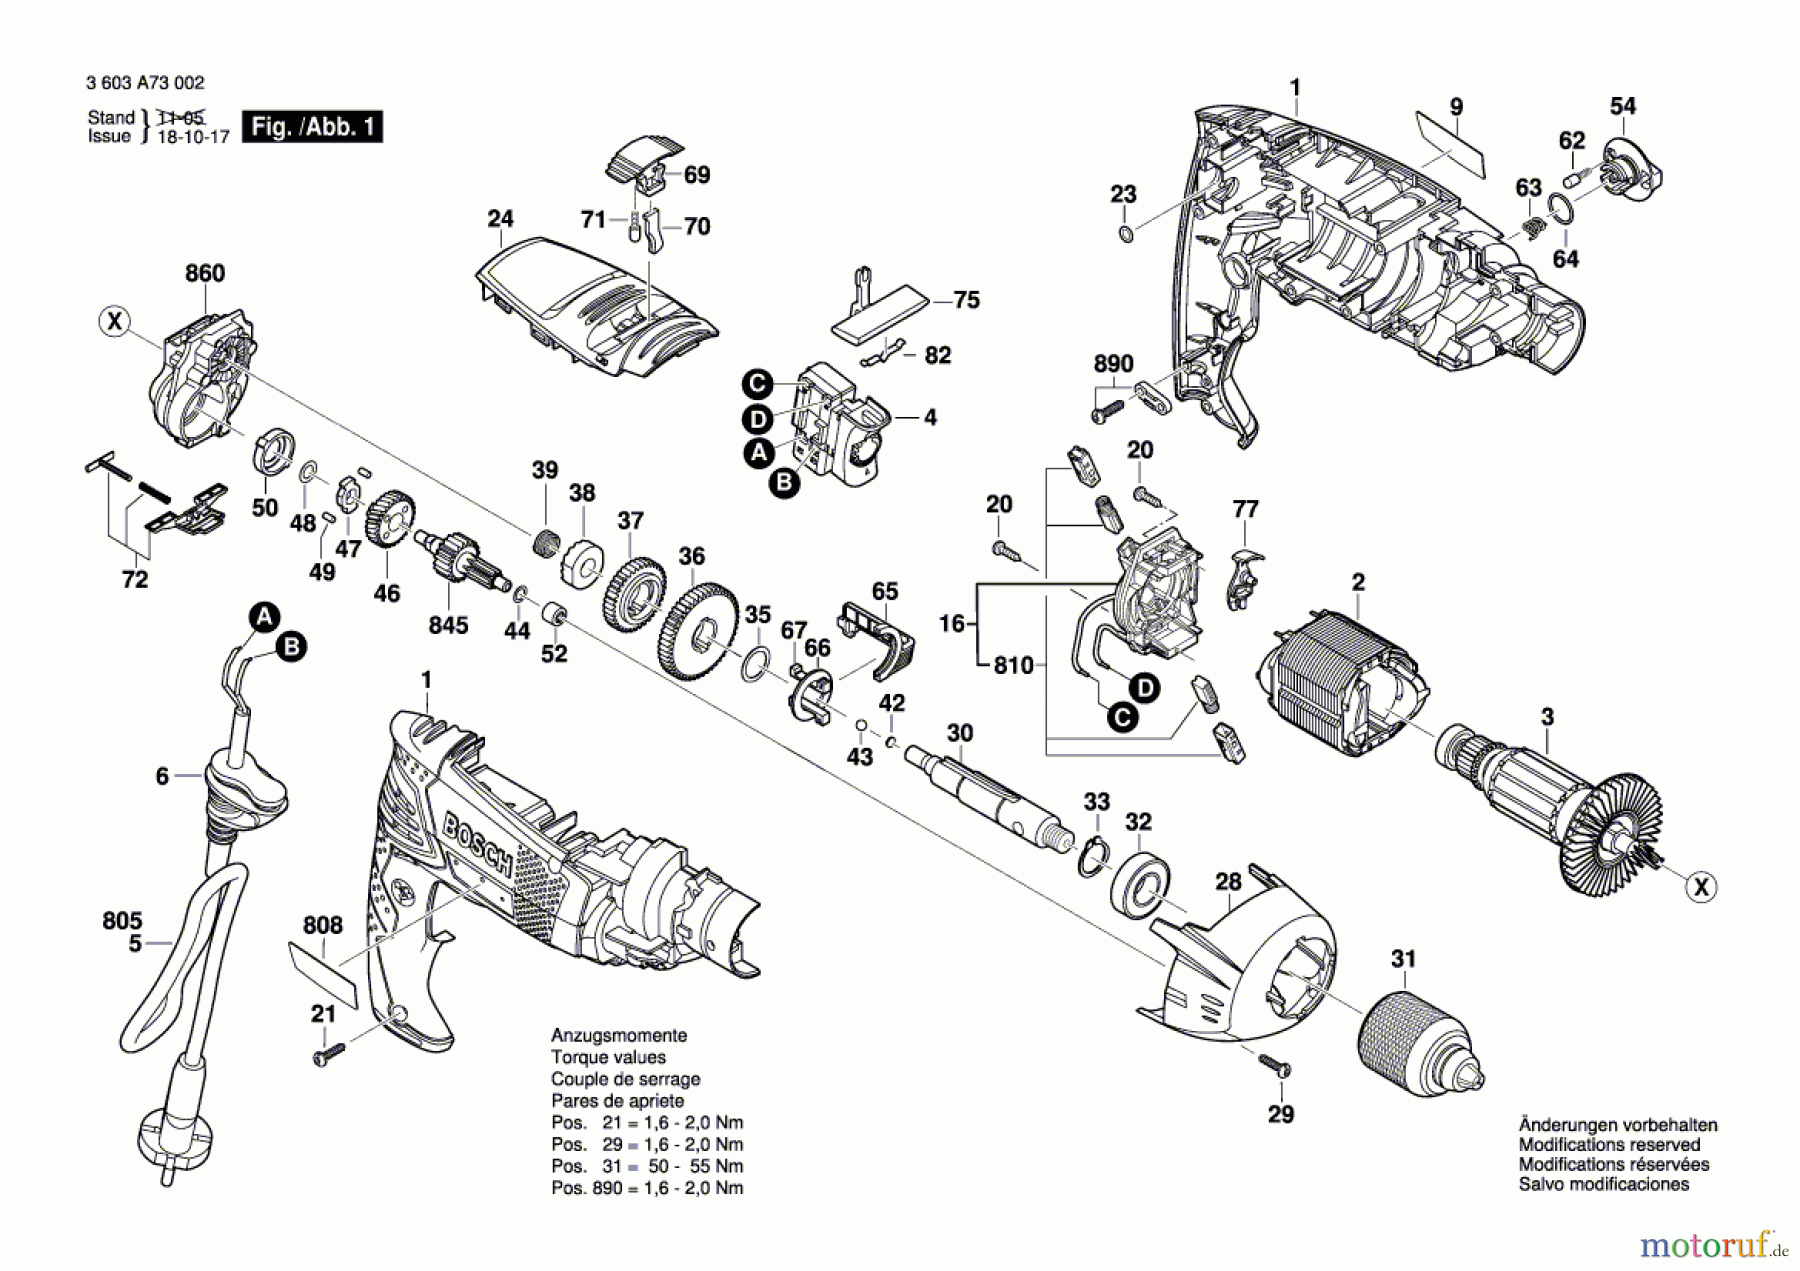  Bosch Werkzeug Schlagbohrmaschine PSB 850-2 RE Seite 1